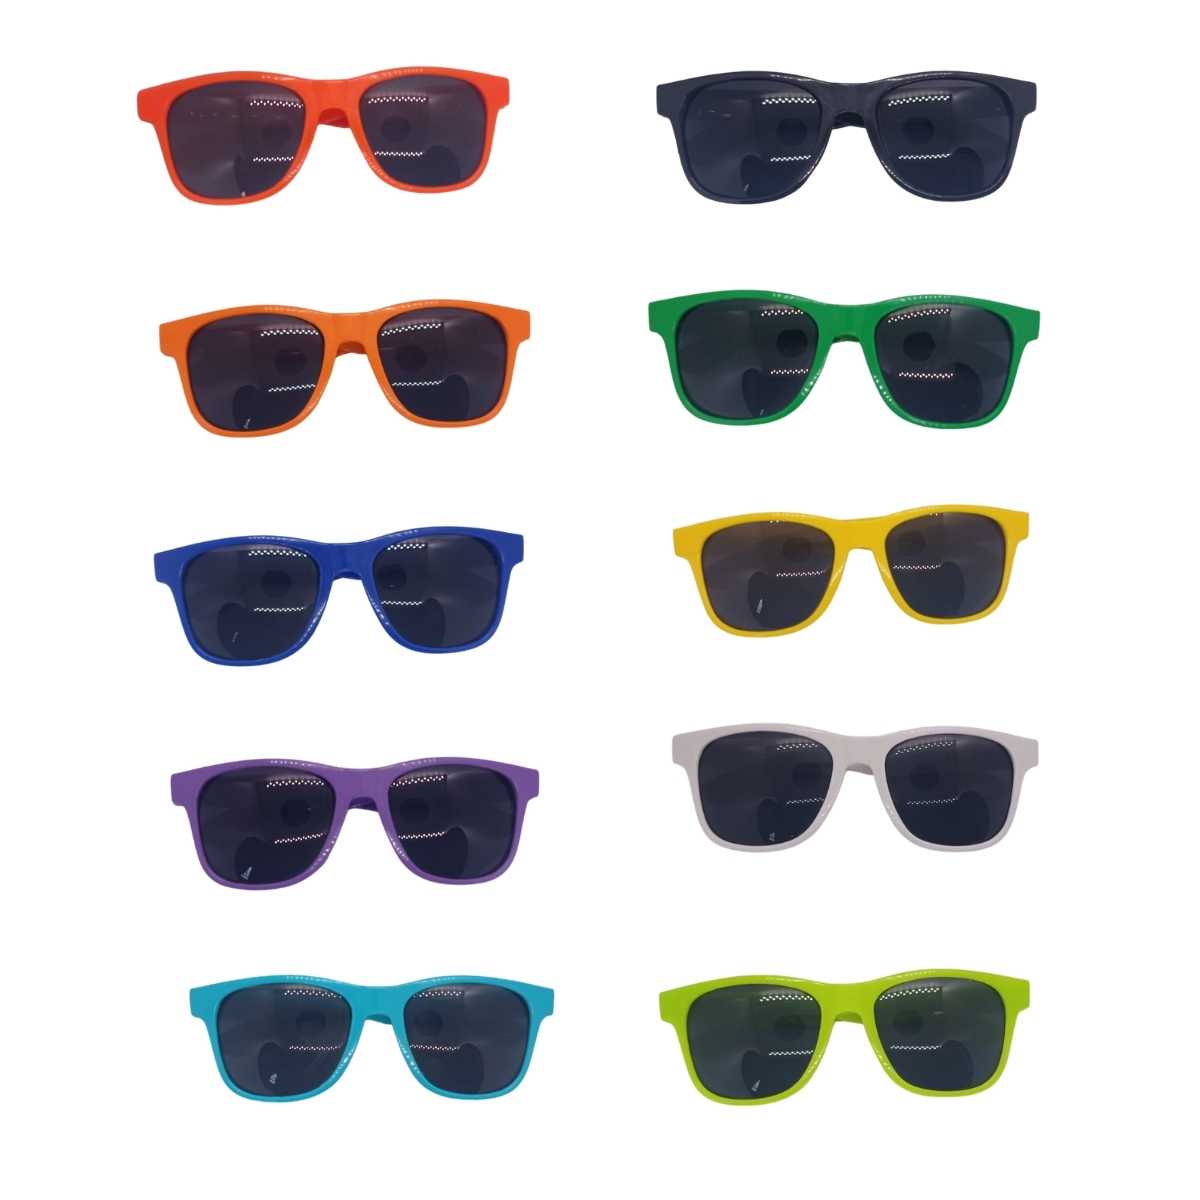 Oculos Way Lente Fumê Adulto Kit c/10 unidades